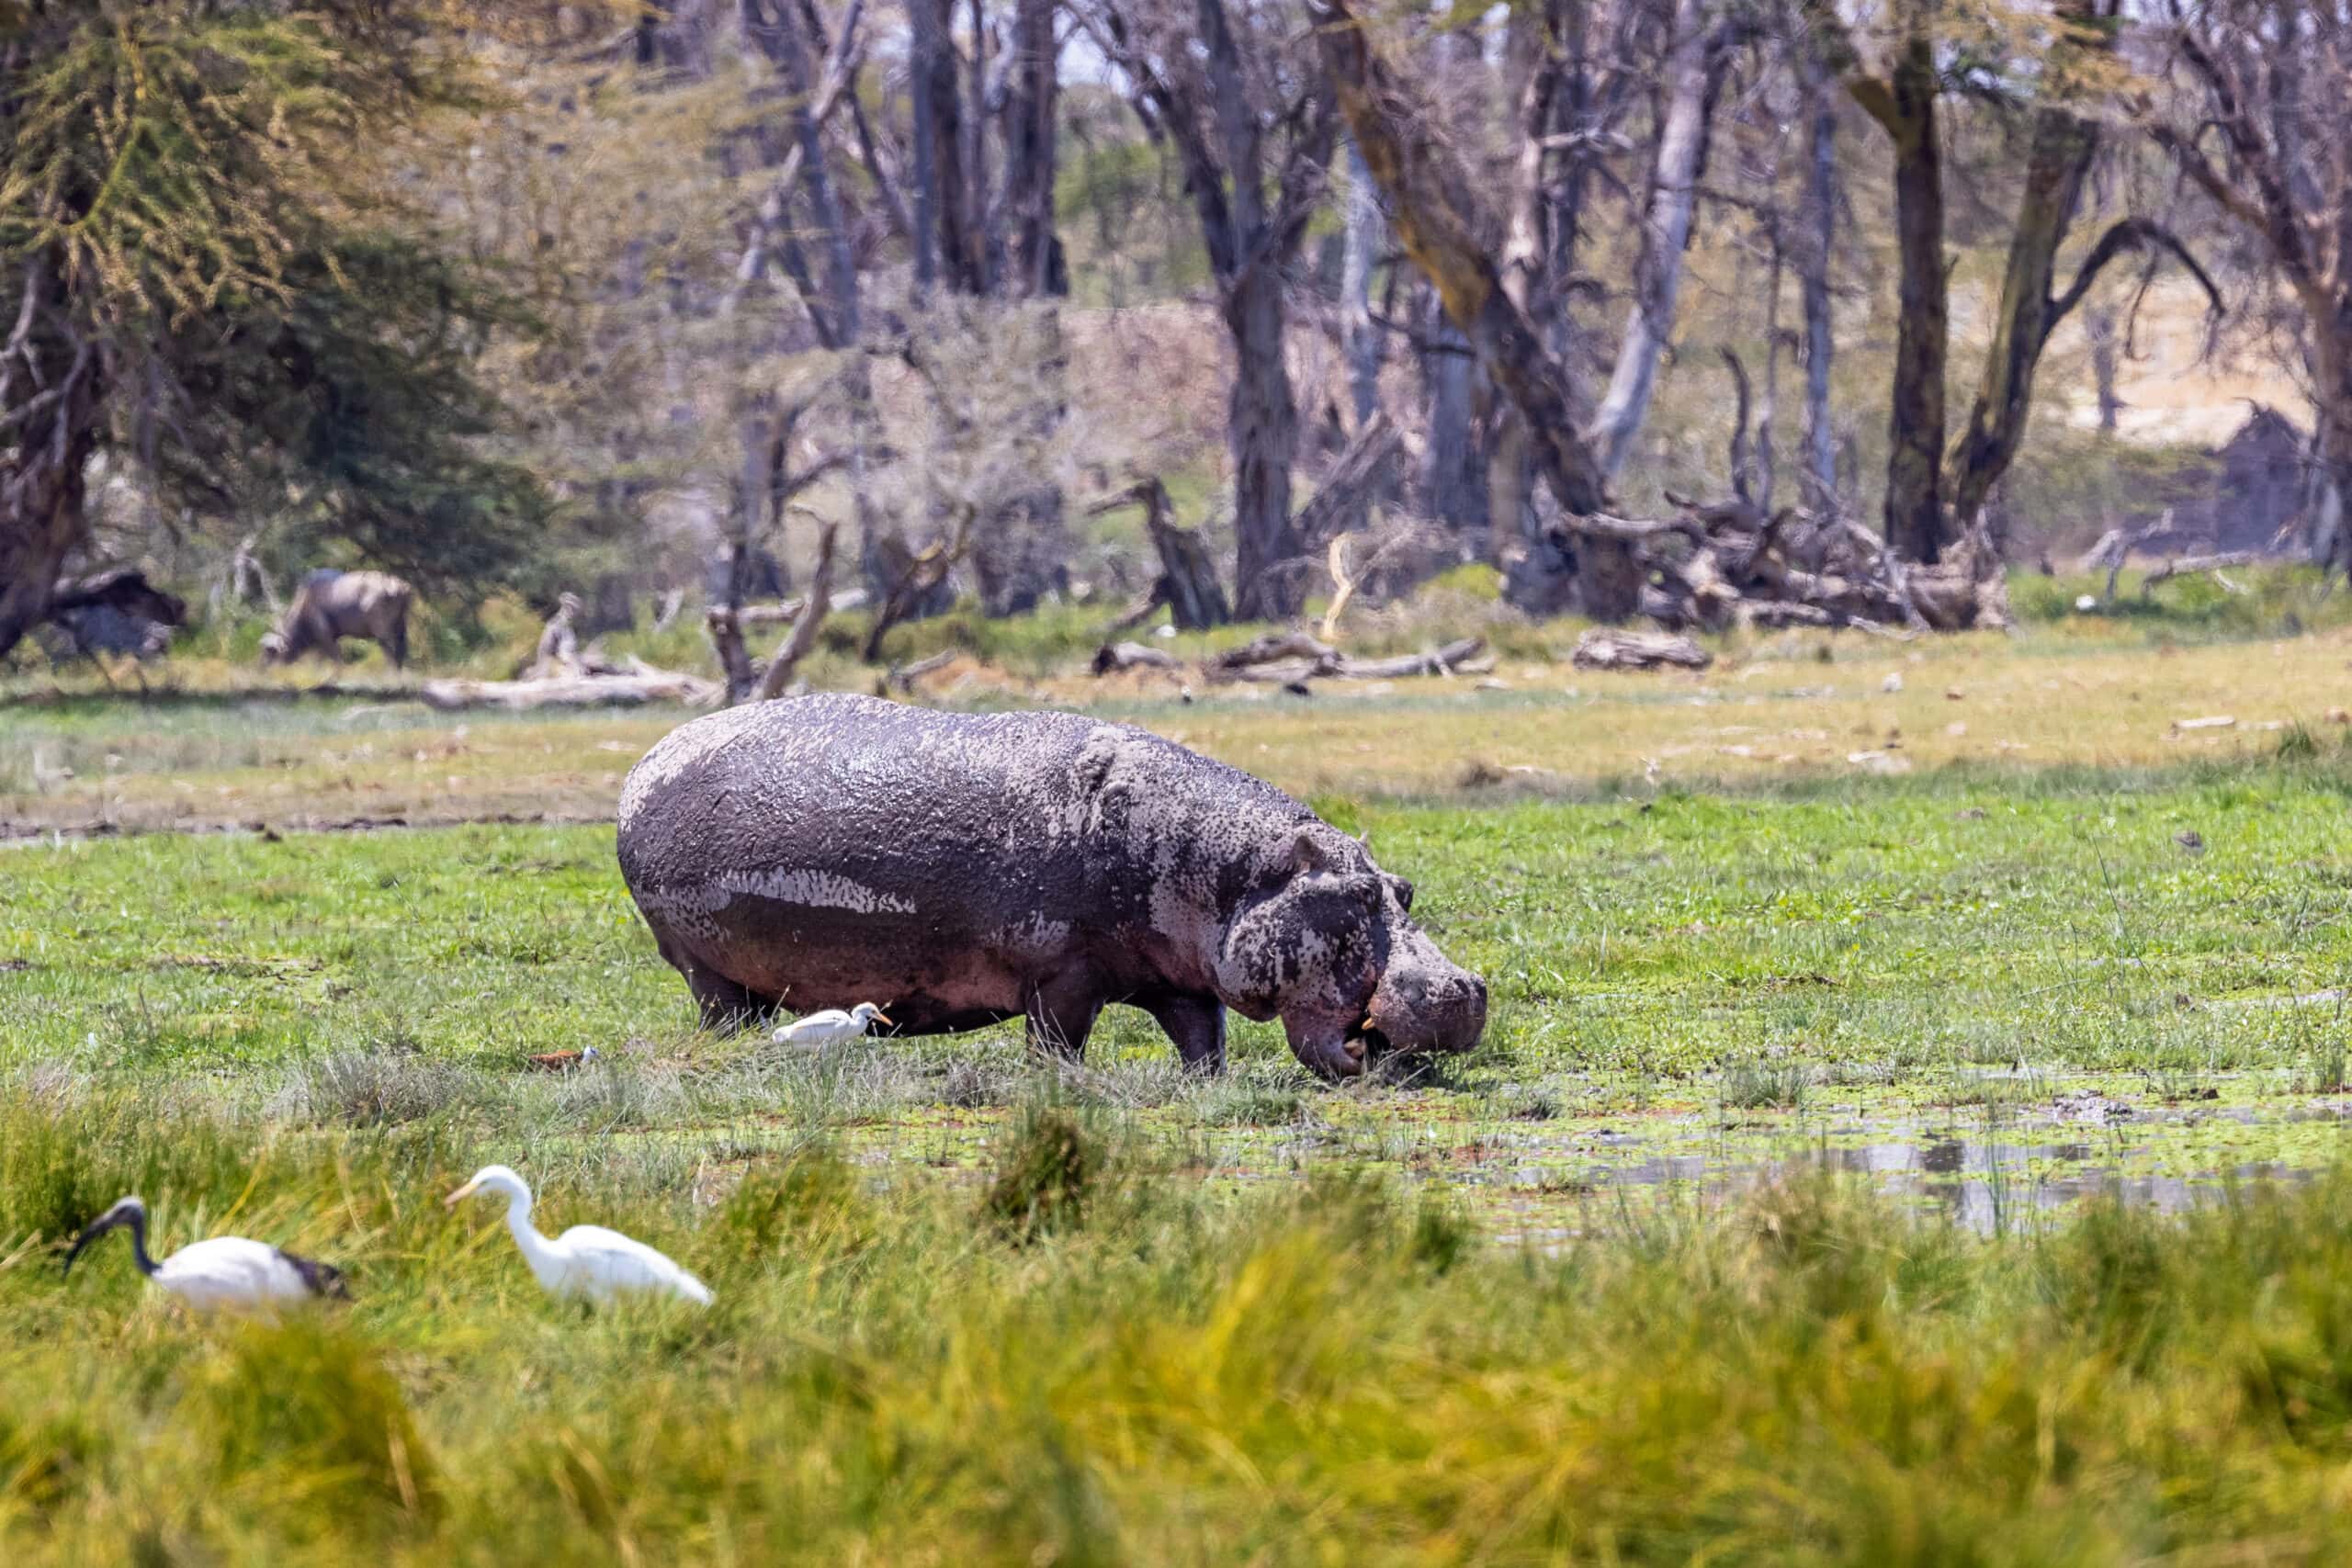 hippo grazing in amboseli kenya marshlands 2022 06 17 03 07 14 utc scaled